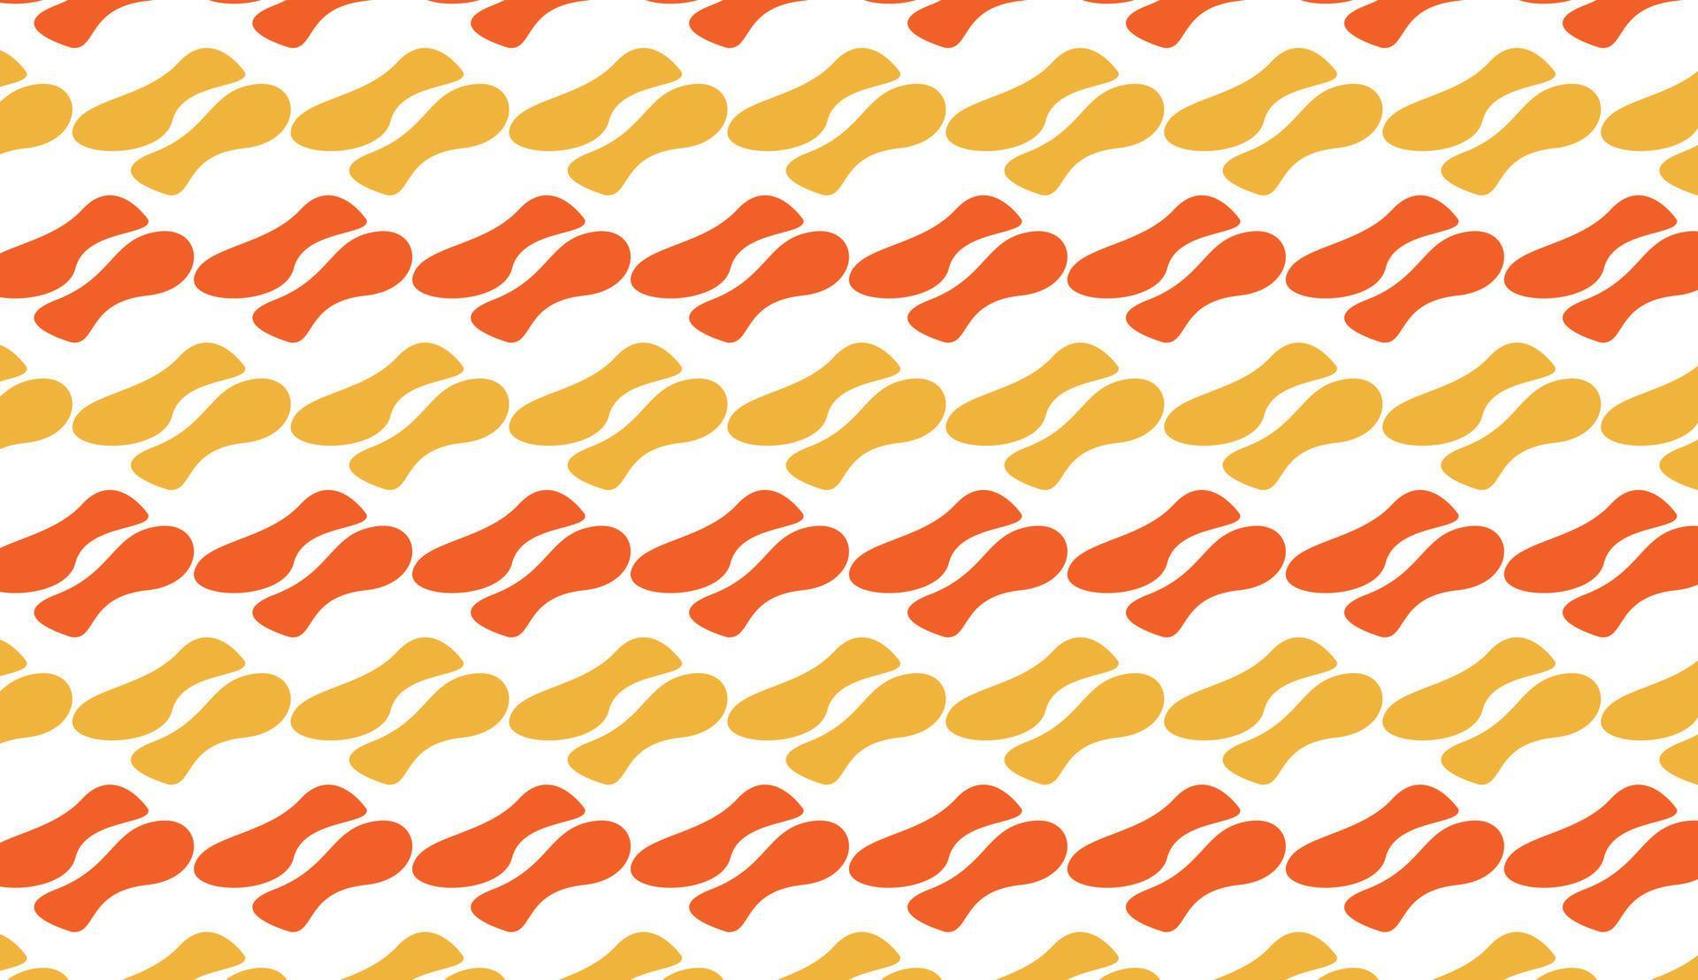 minimalistisch naadloos patroon in geel en oranje zoals gebakken kip. eenvoudig herhalend patroonontwerp. kan worden gebruikt voor posters, brochures, ansichtkaarten en andere afdrukbehoeften. vector illustratie